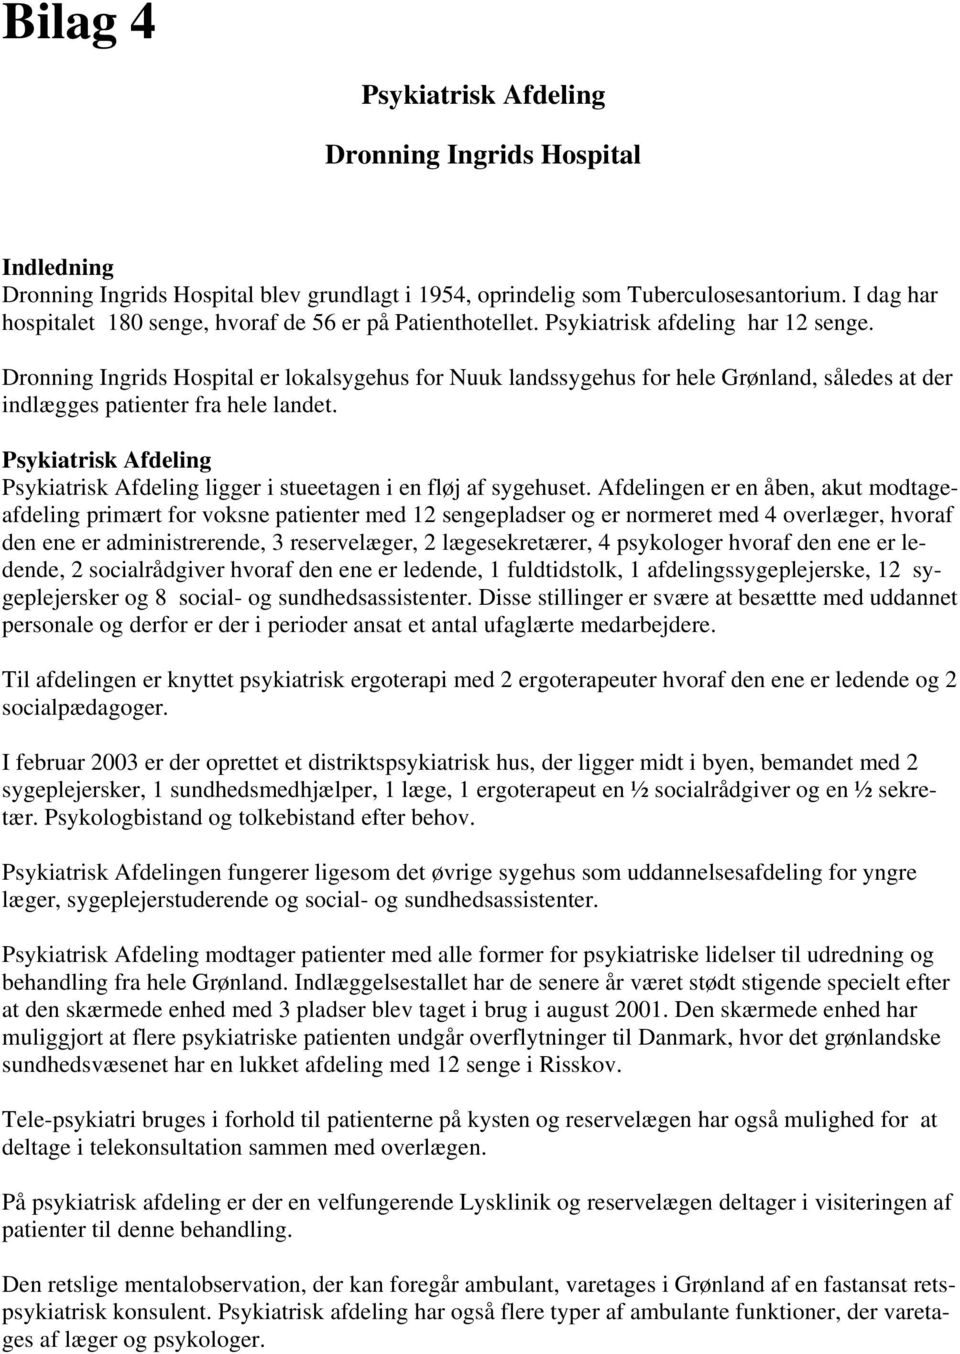 Dronning Ingrids Hospital er lokalsygehus for Nuuk landssygehus for hele Grønland, således at der indlægges patienter fra hele landet.